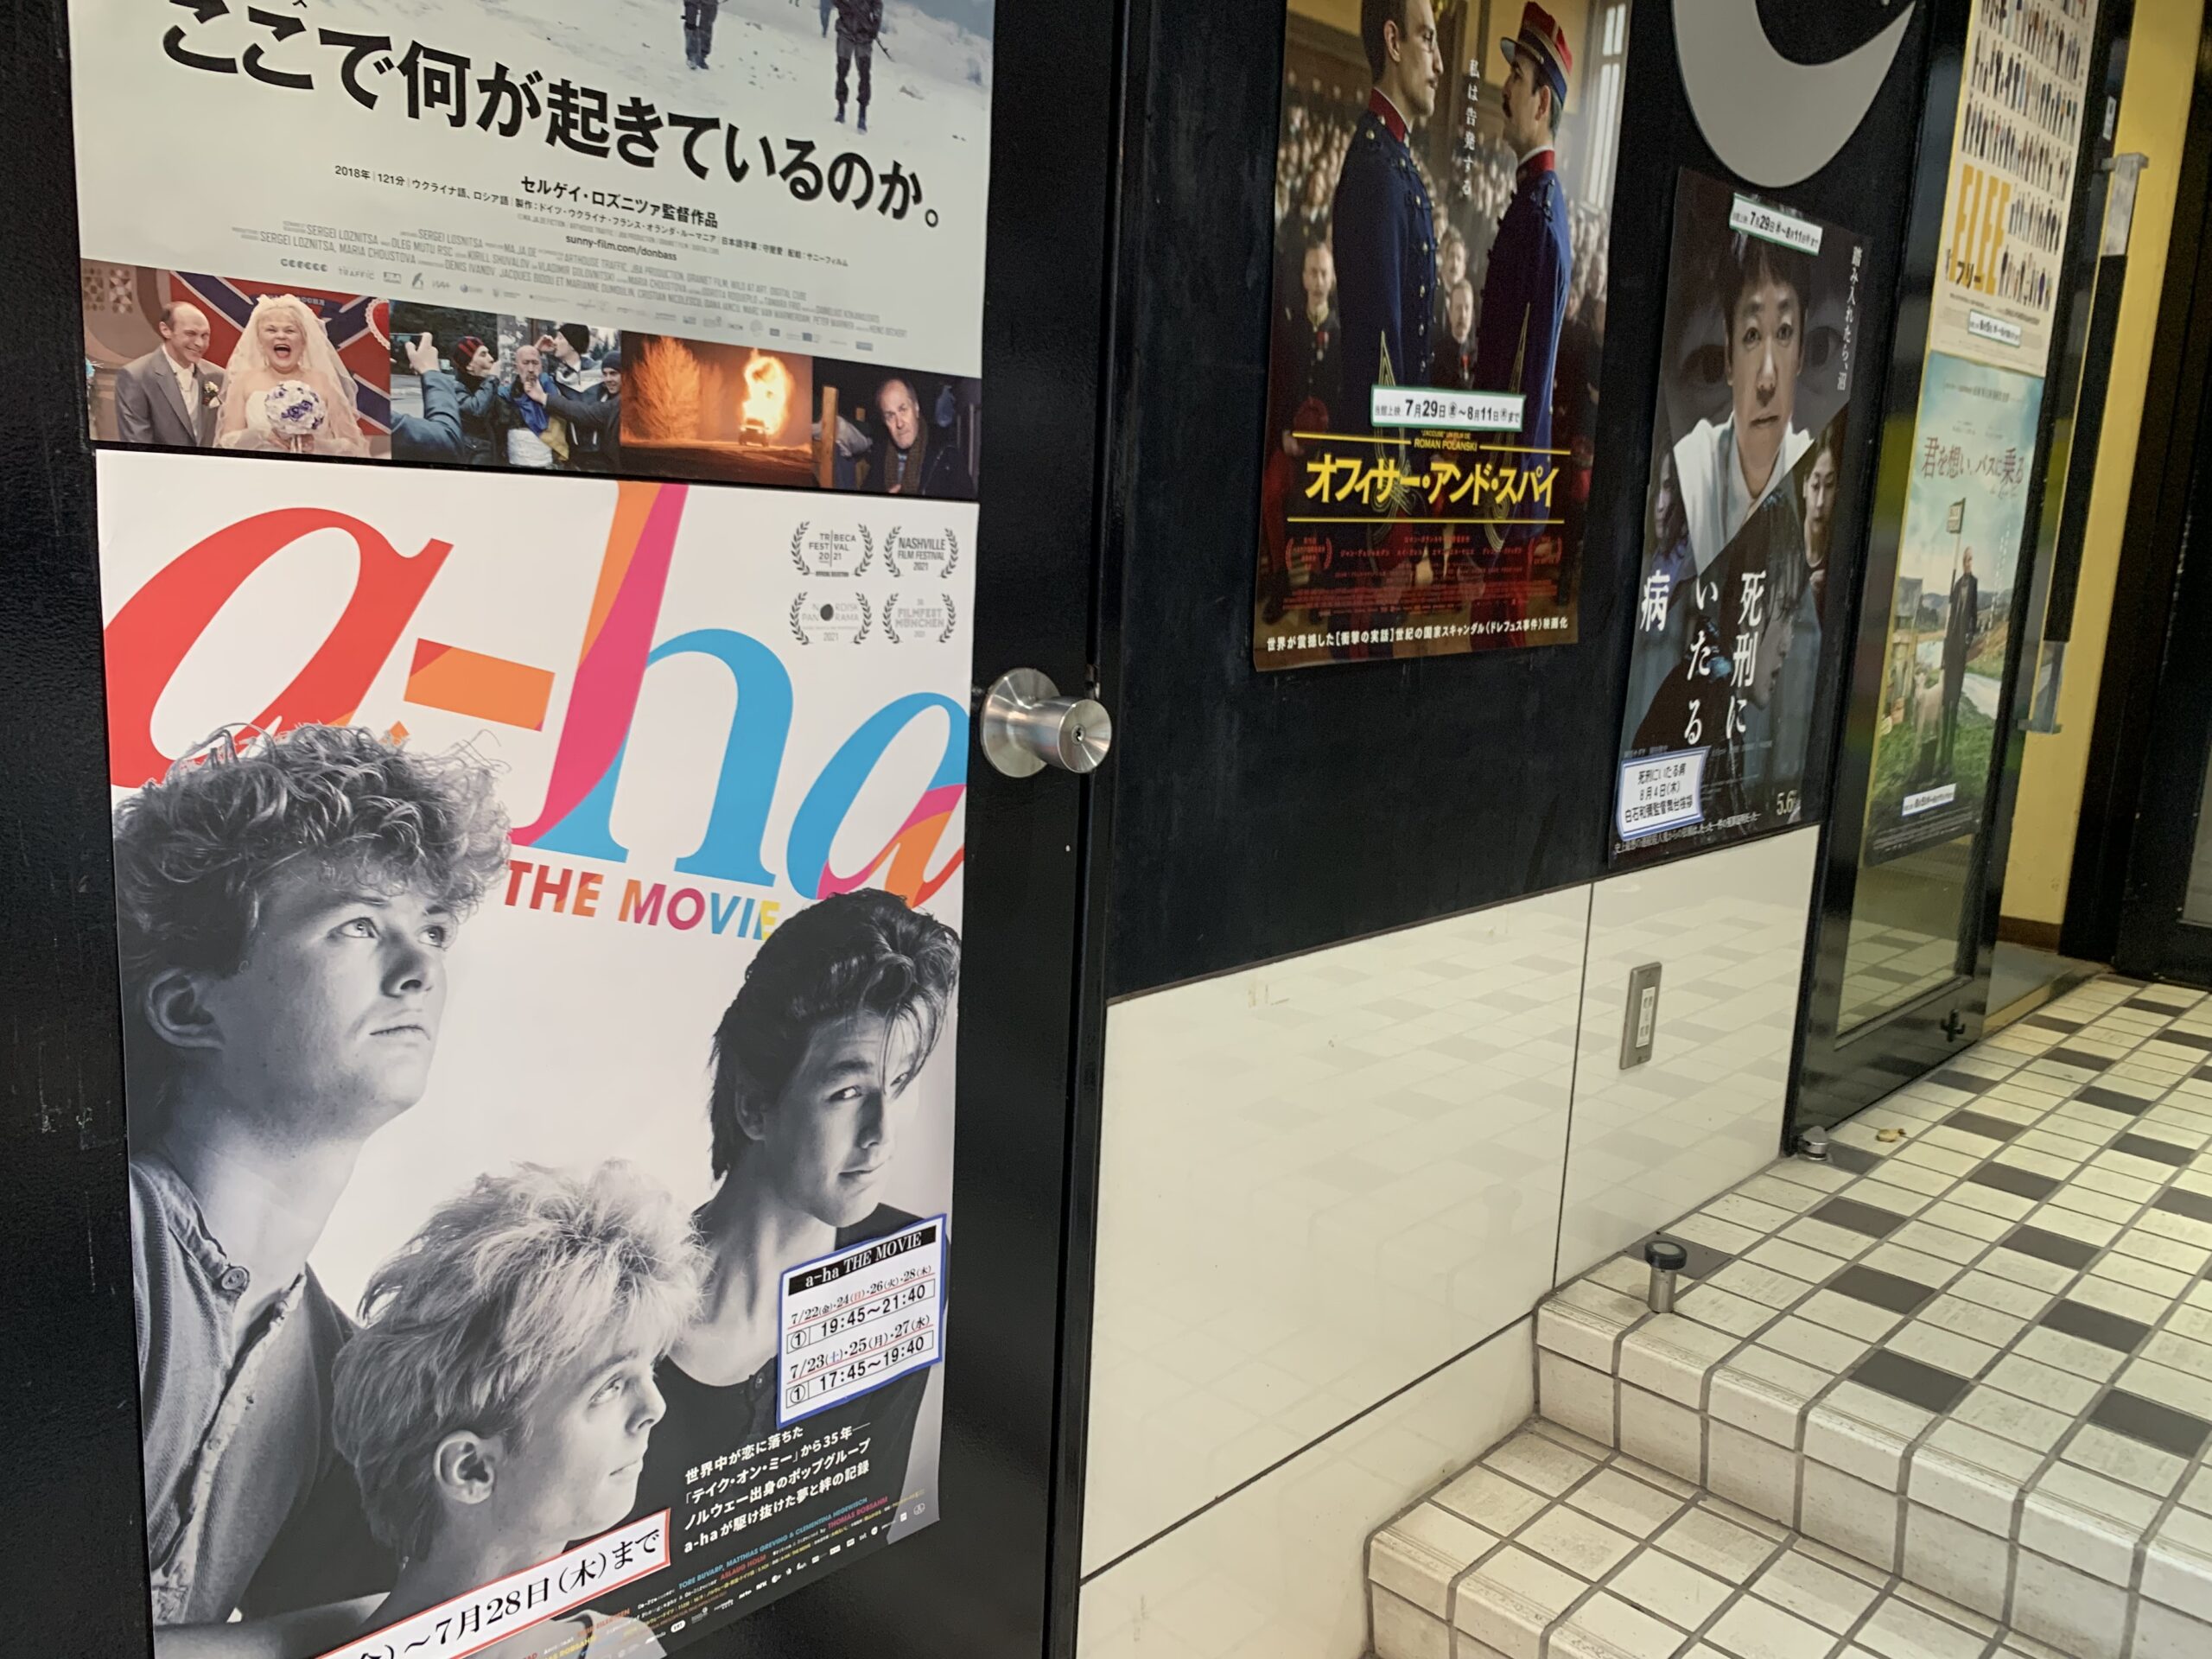 浜松市のミニシアターで『a-ha THE MOVIE』を観たついでに駅近のジャズ喫茶を訪問してきた